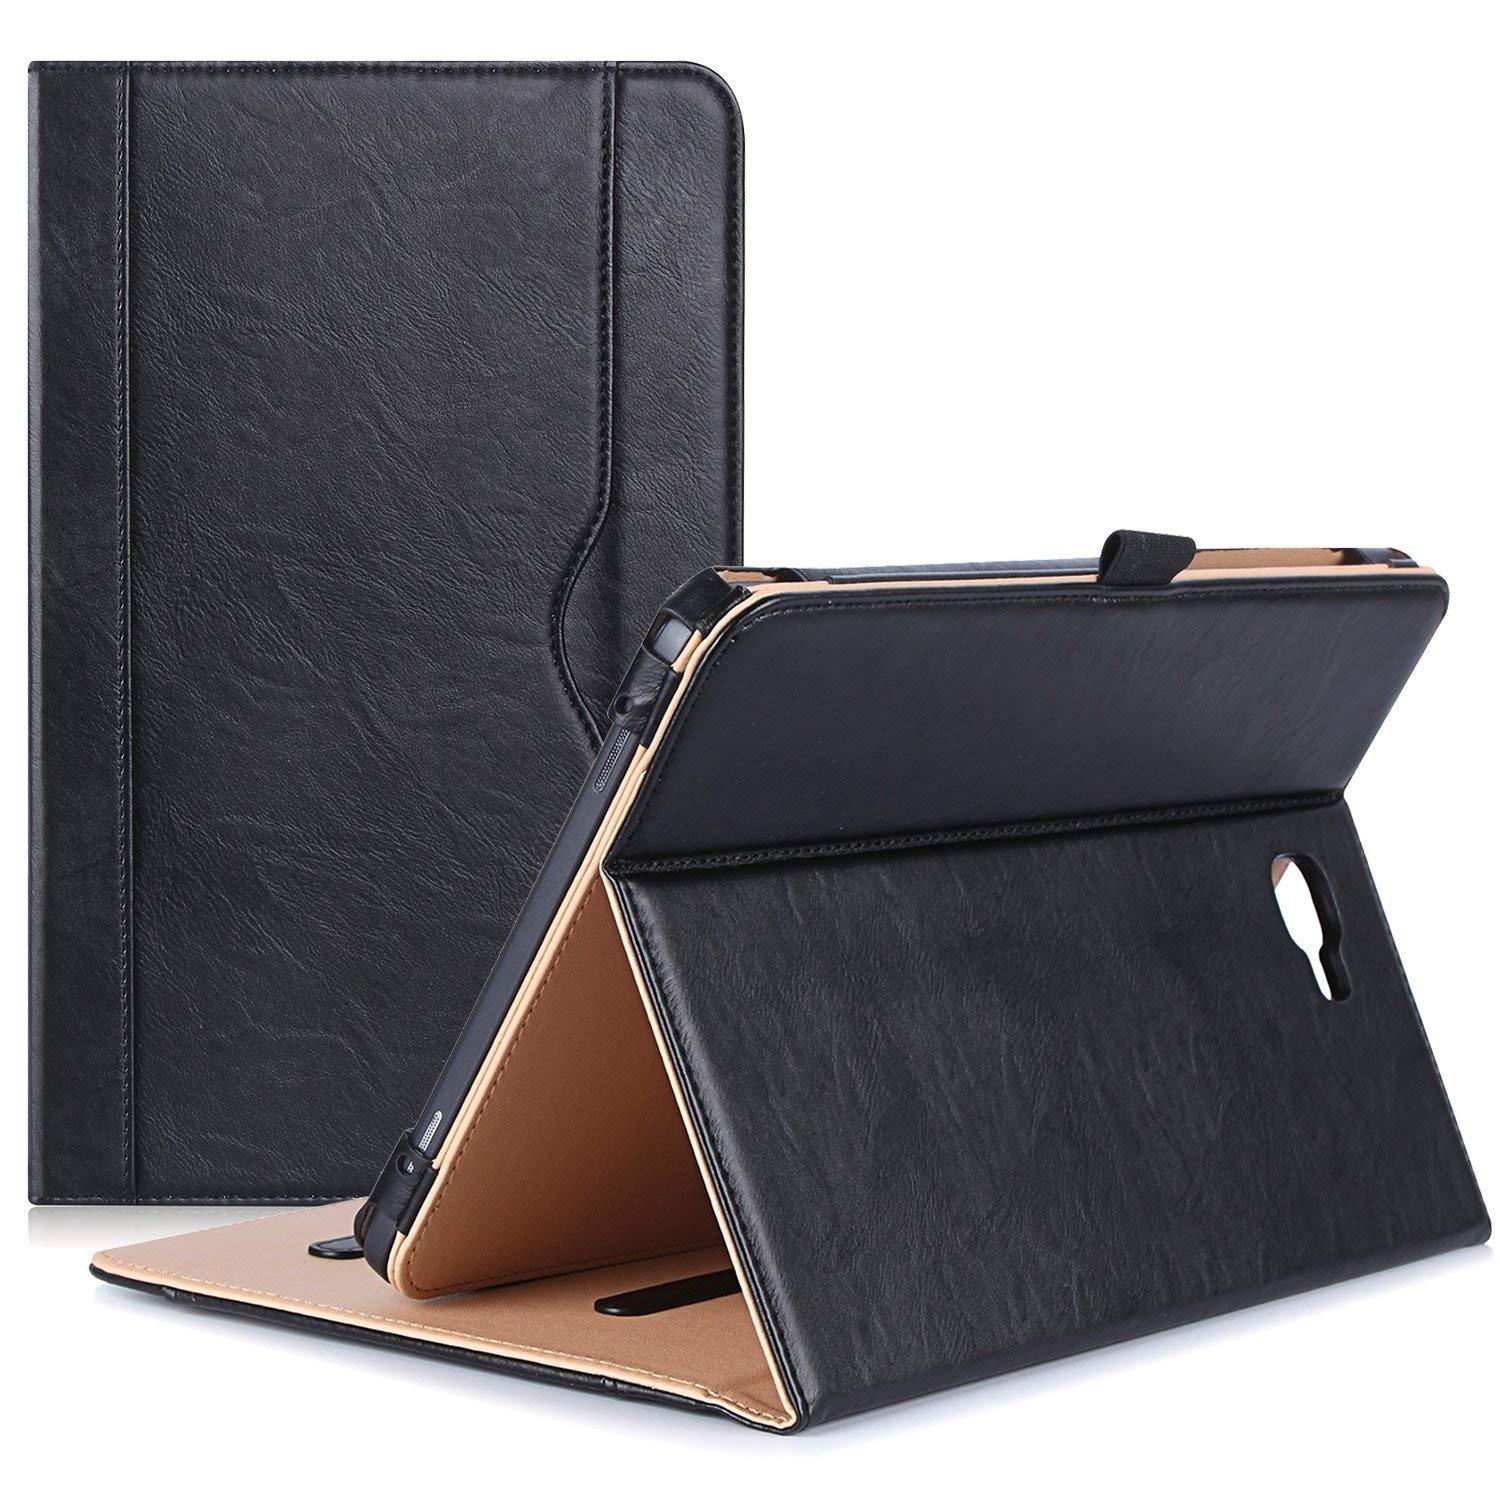 Galaxy Tab A 10.1 2016 T580 Leather Folio Case